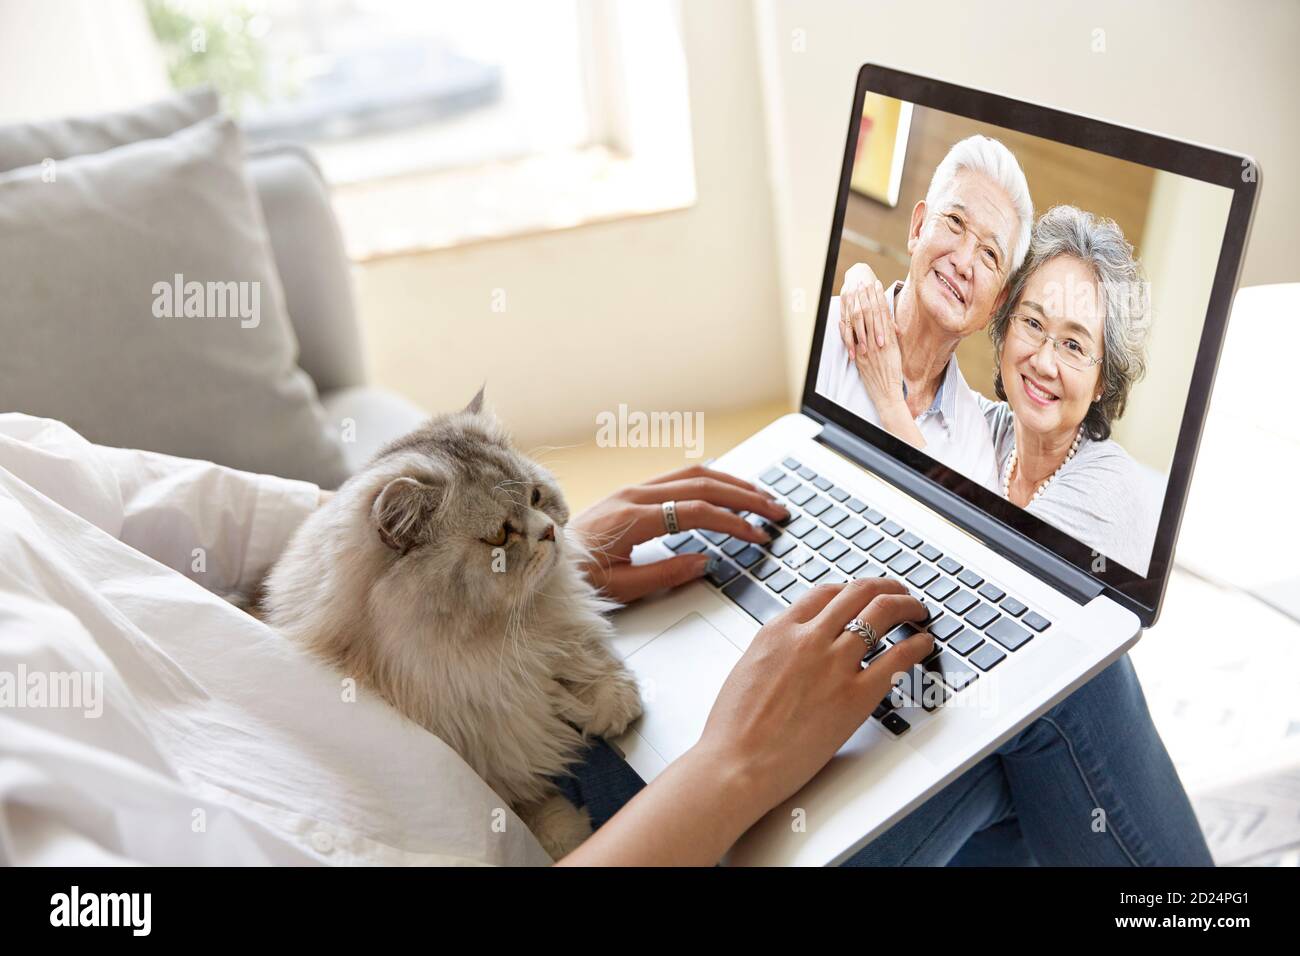 joven hija adulta asiática que se aloja en casa con gato hablar con padres mayores en línea a través de video chat utilizando el portátil ordenador Foto de stock